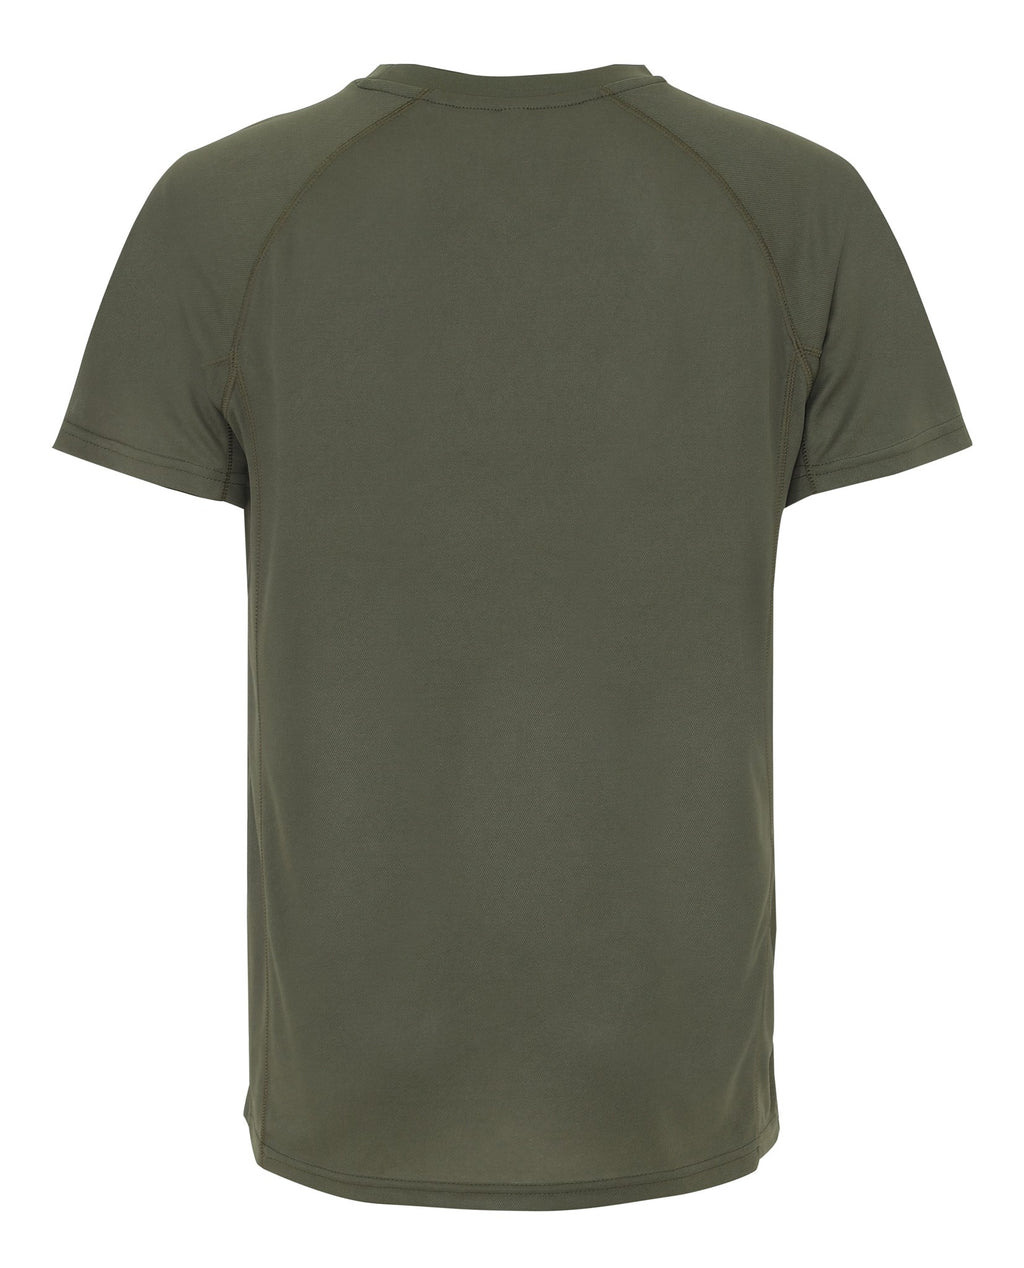 Trenings T-shirt - Army Grønn